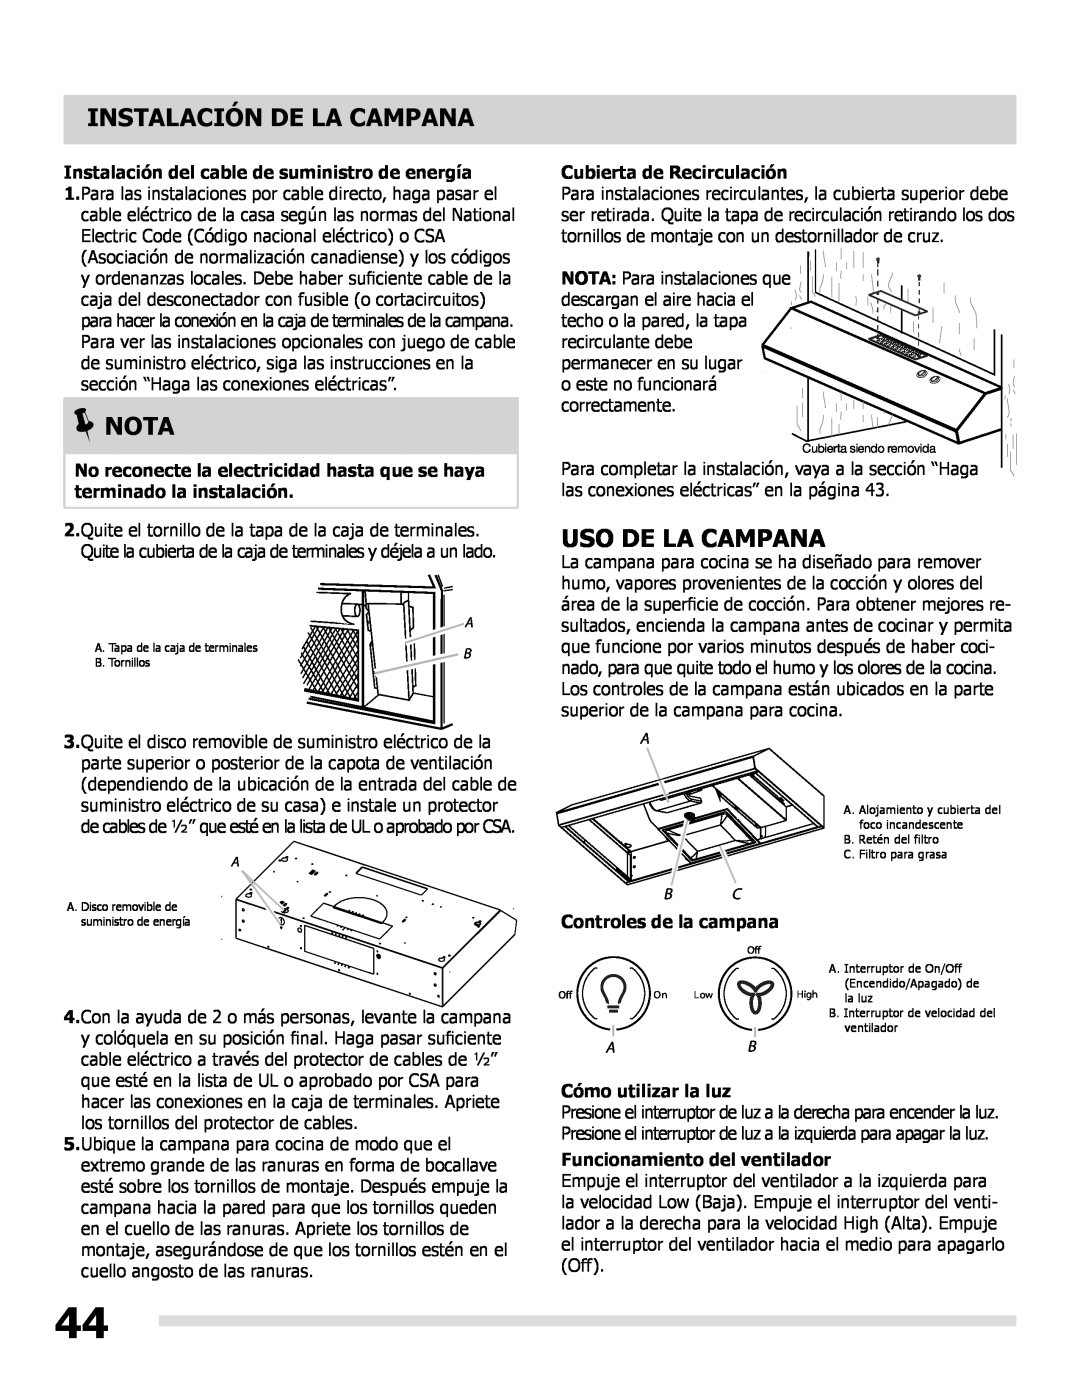 Frigidaire LI30KC manual Uso De La Campana, Cubierta de Recirculación, Controles de la campana, Cómo utilizar la luz, Nota 